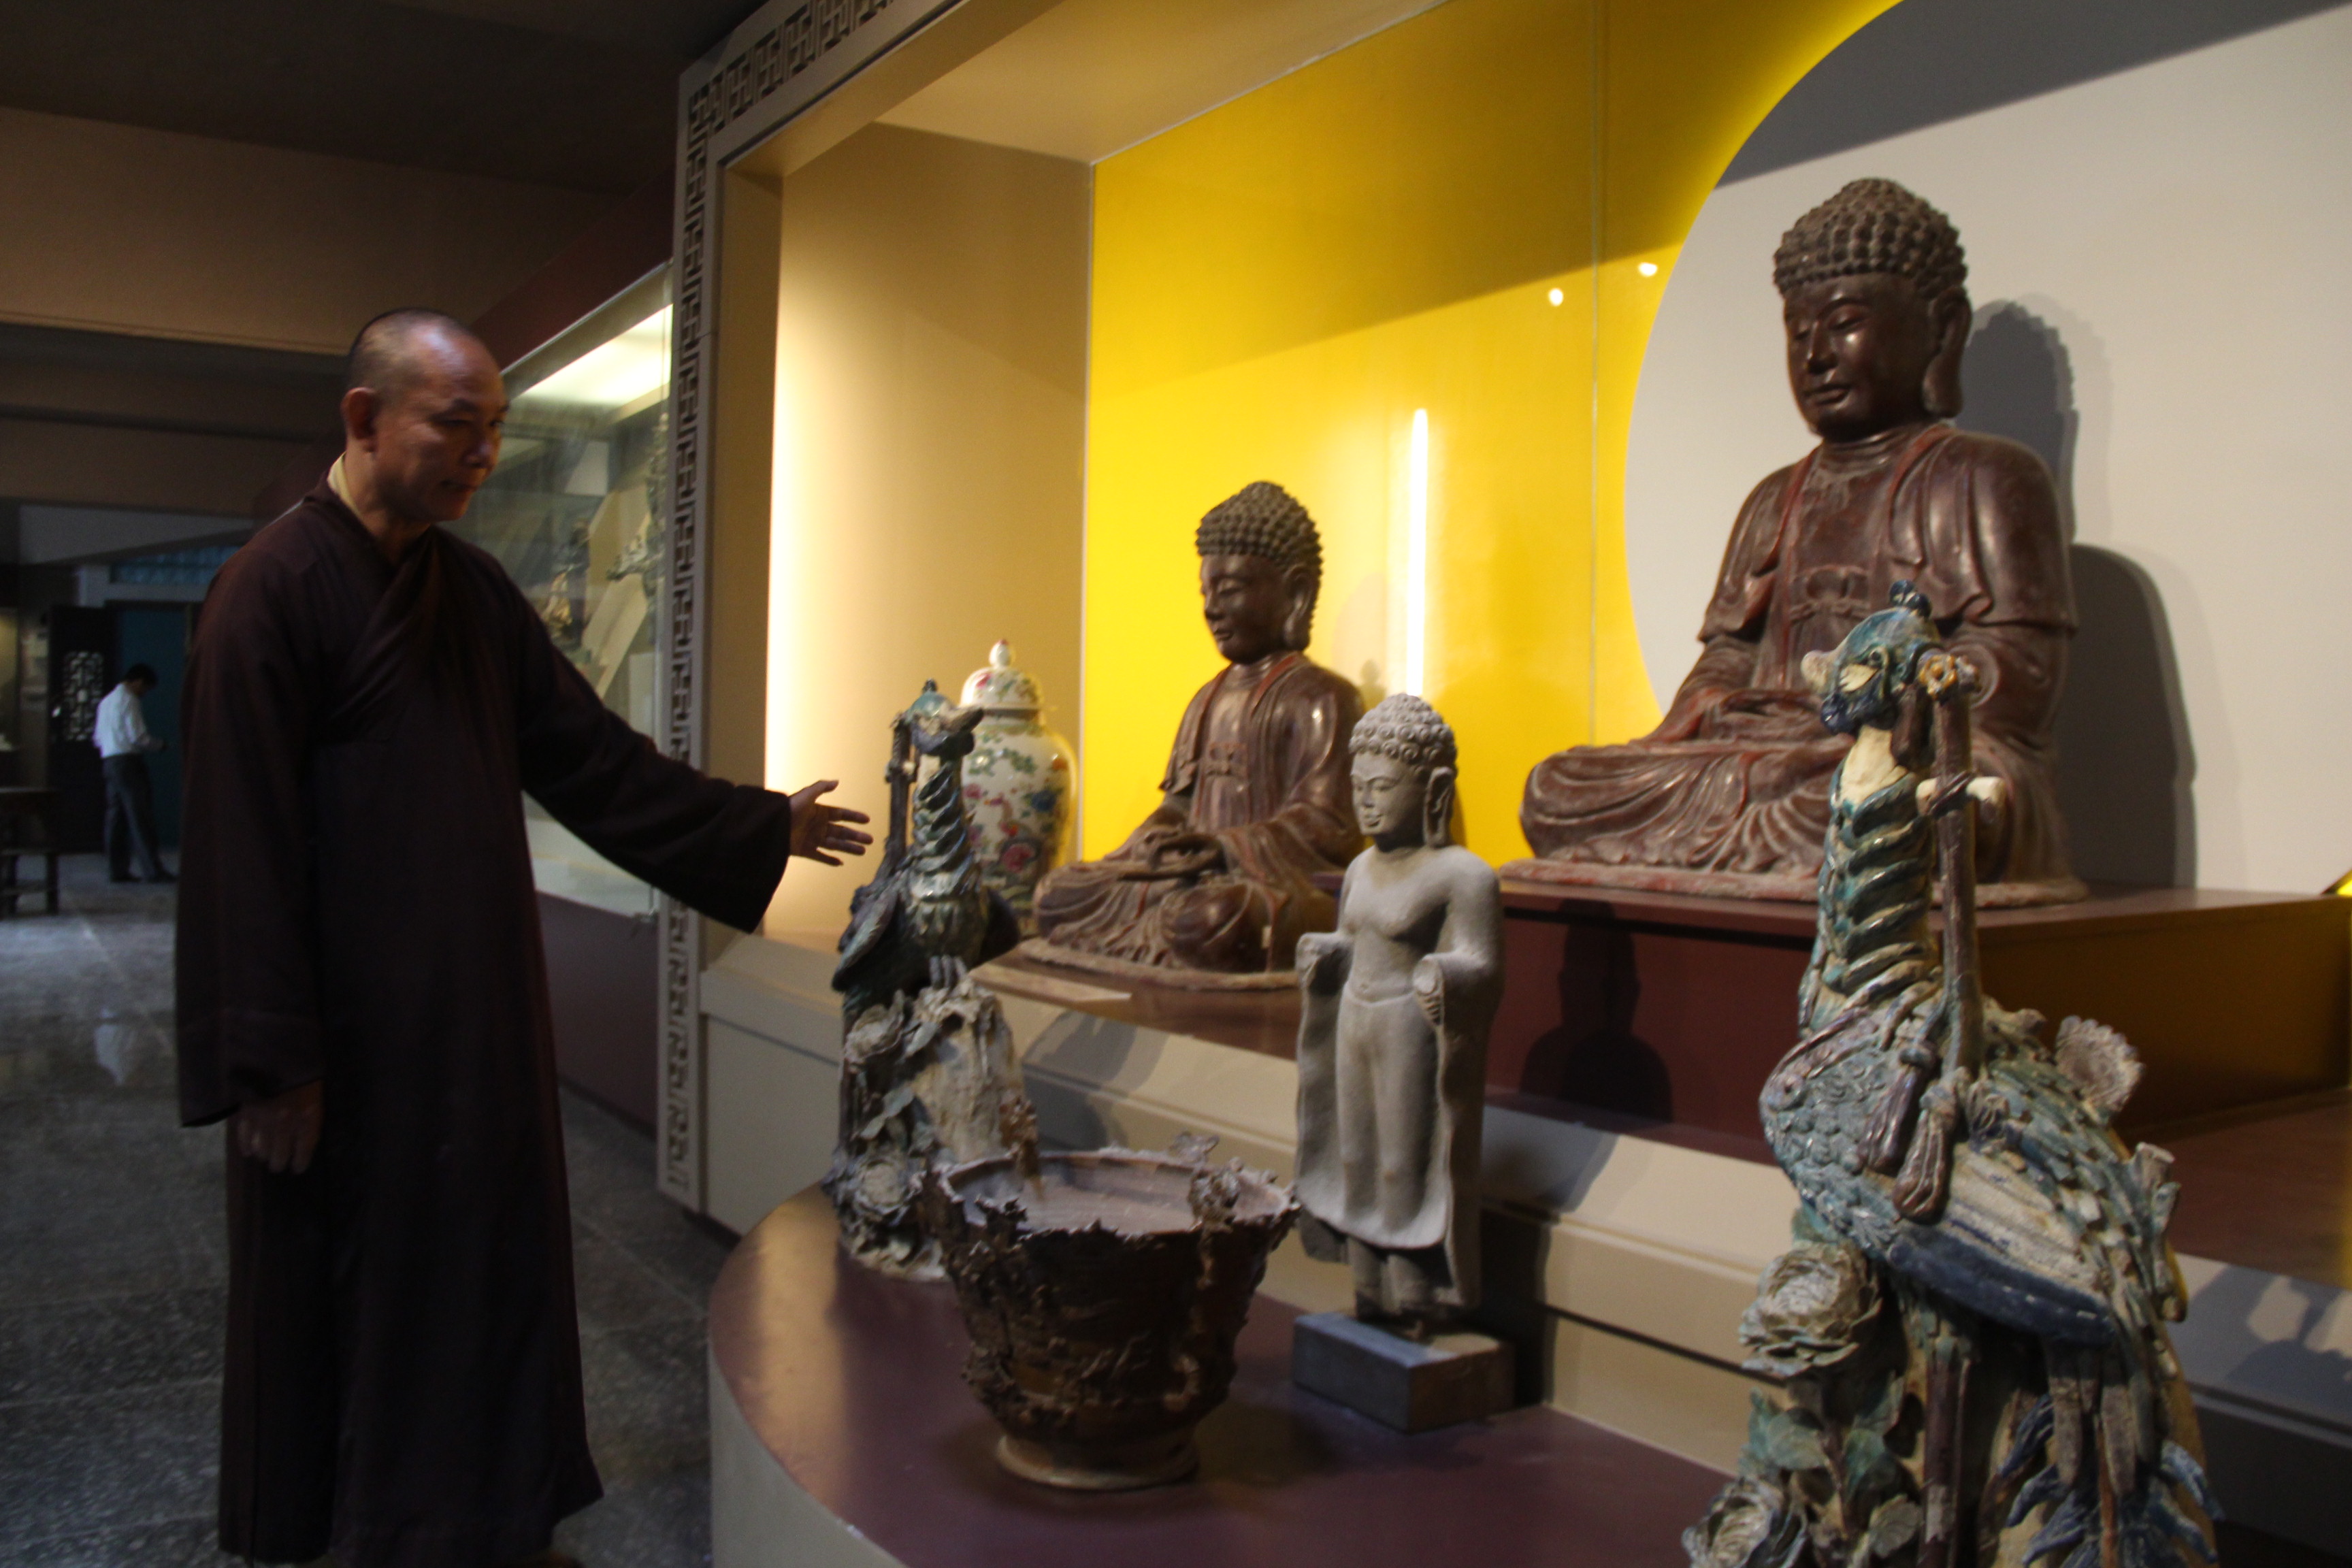 Hơn 500 hiện vật, trong đó có 200 cổ vật đã được giám định sẽ được trưng bày trong không gian Bảo tàng Văn hóa Phật giáo - Ảnh: P.Thành